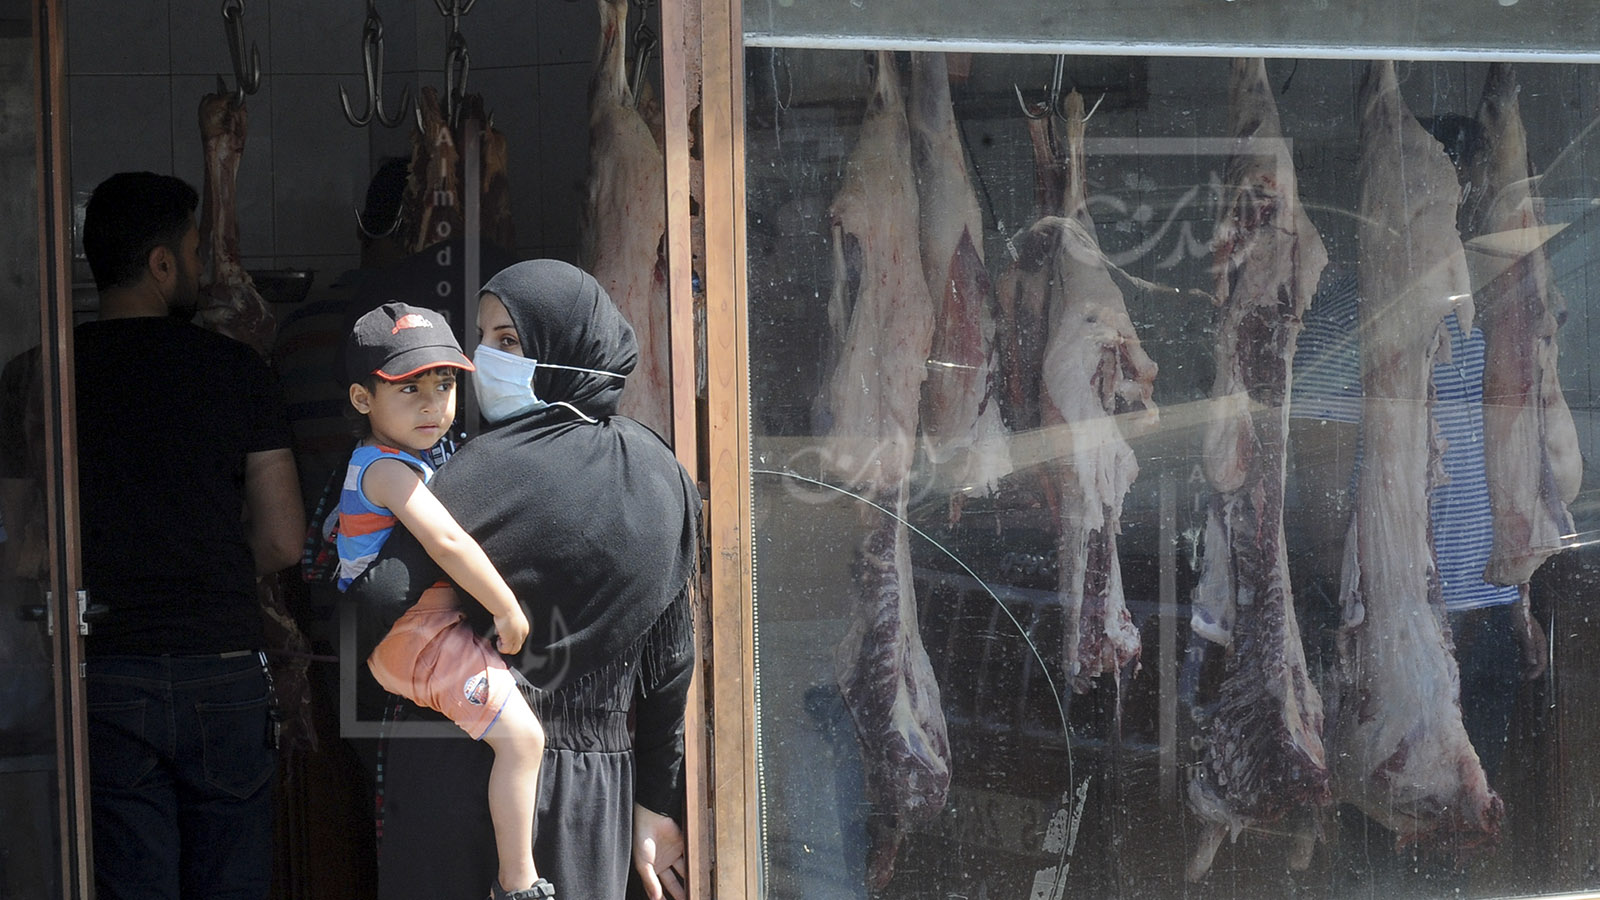 مخاوف من اللحوم الهندية: تراخٍ بالرقابة أم حرب تجّار؟